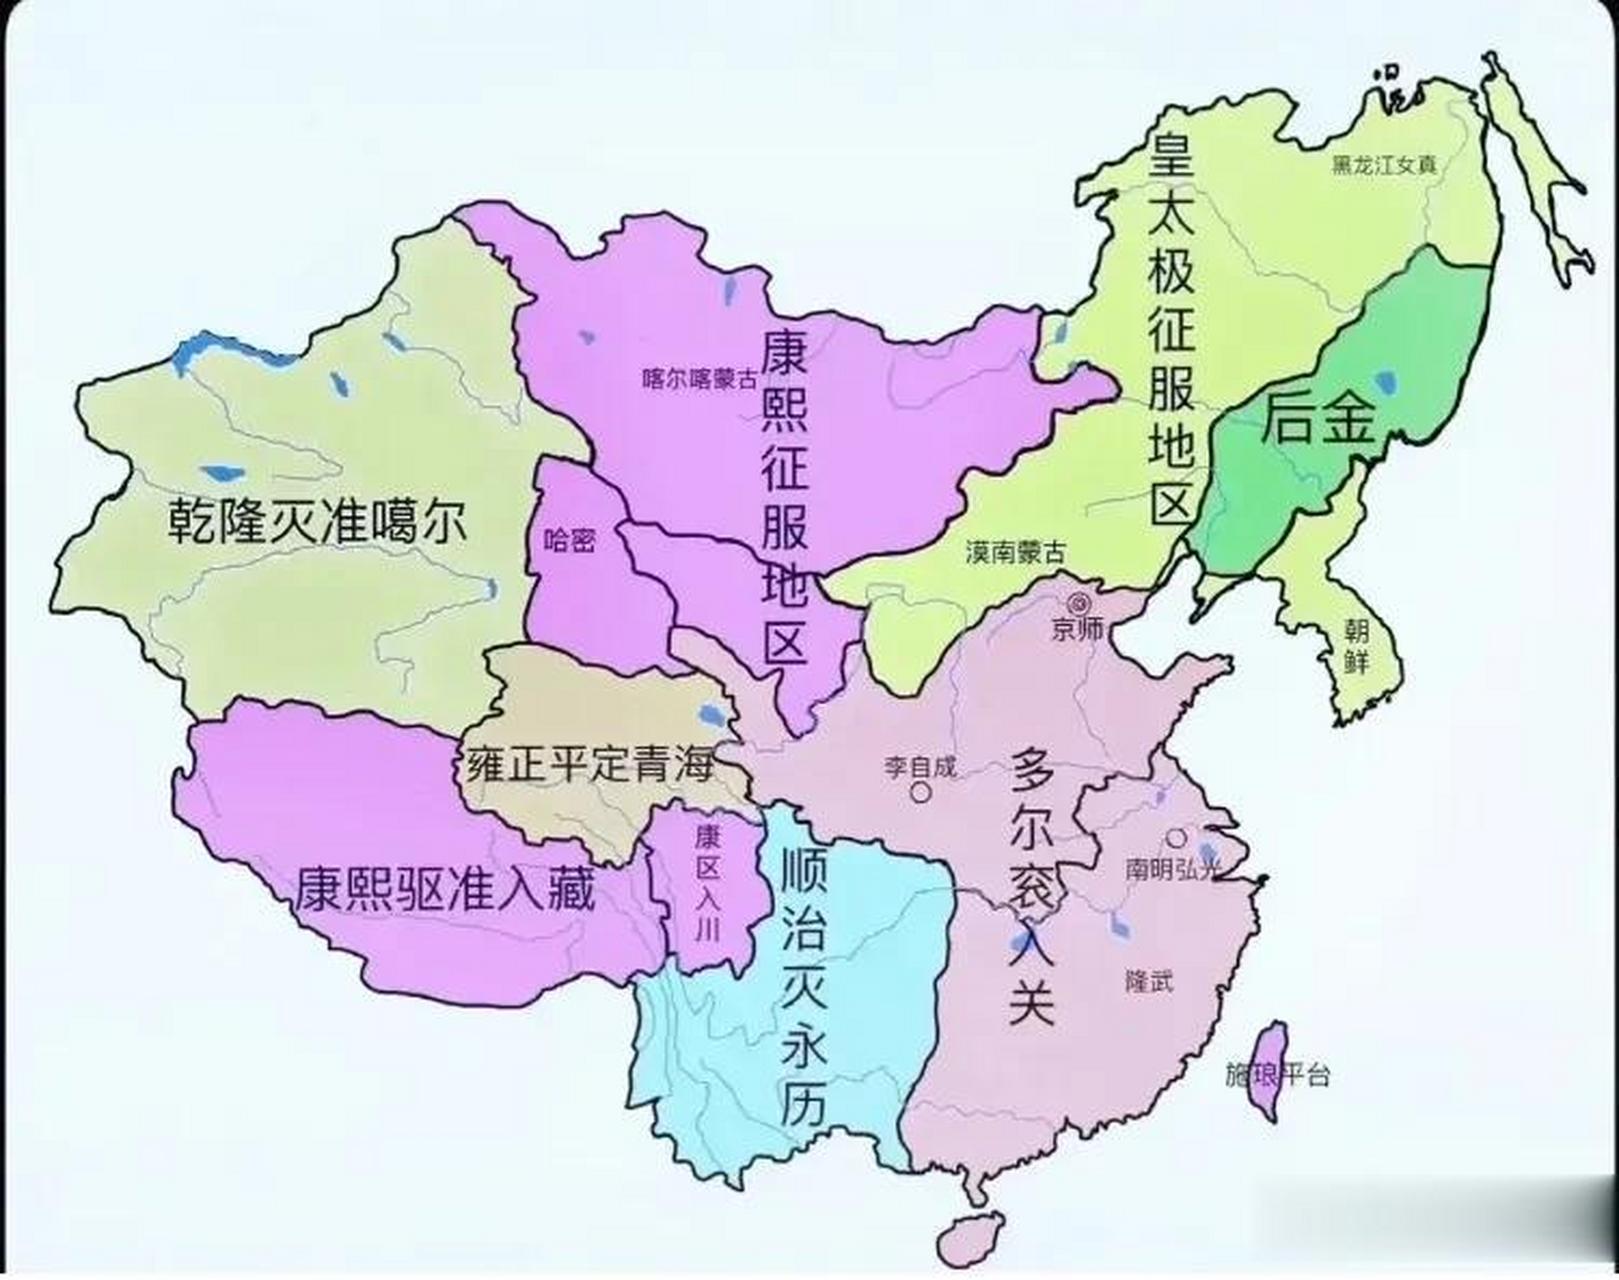 清朝前期历代皇帝打下的疆域版图,连续五代六位帝王花费140多年的时间